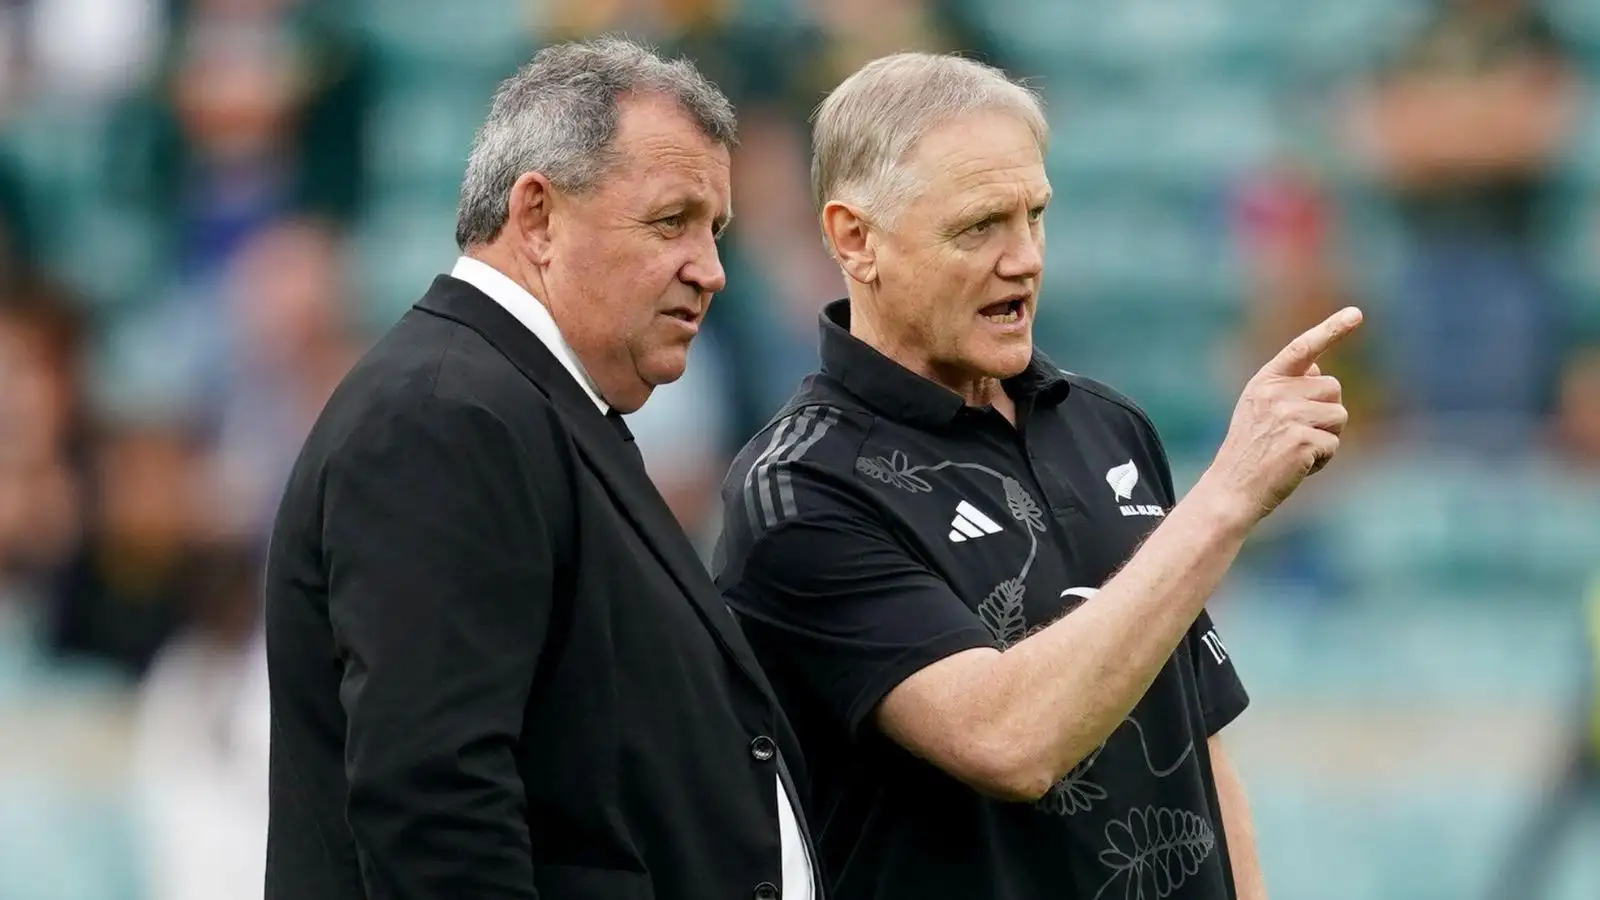 L'entraîneur-chef des All Blacks, Ian Foster, interagit avec l'entraîneur néo-zélandais Joe Schmidt.